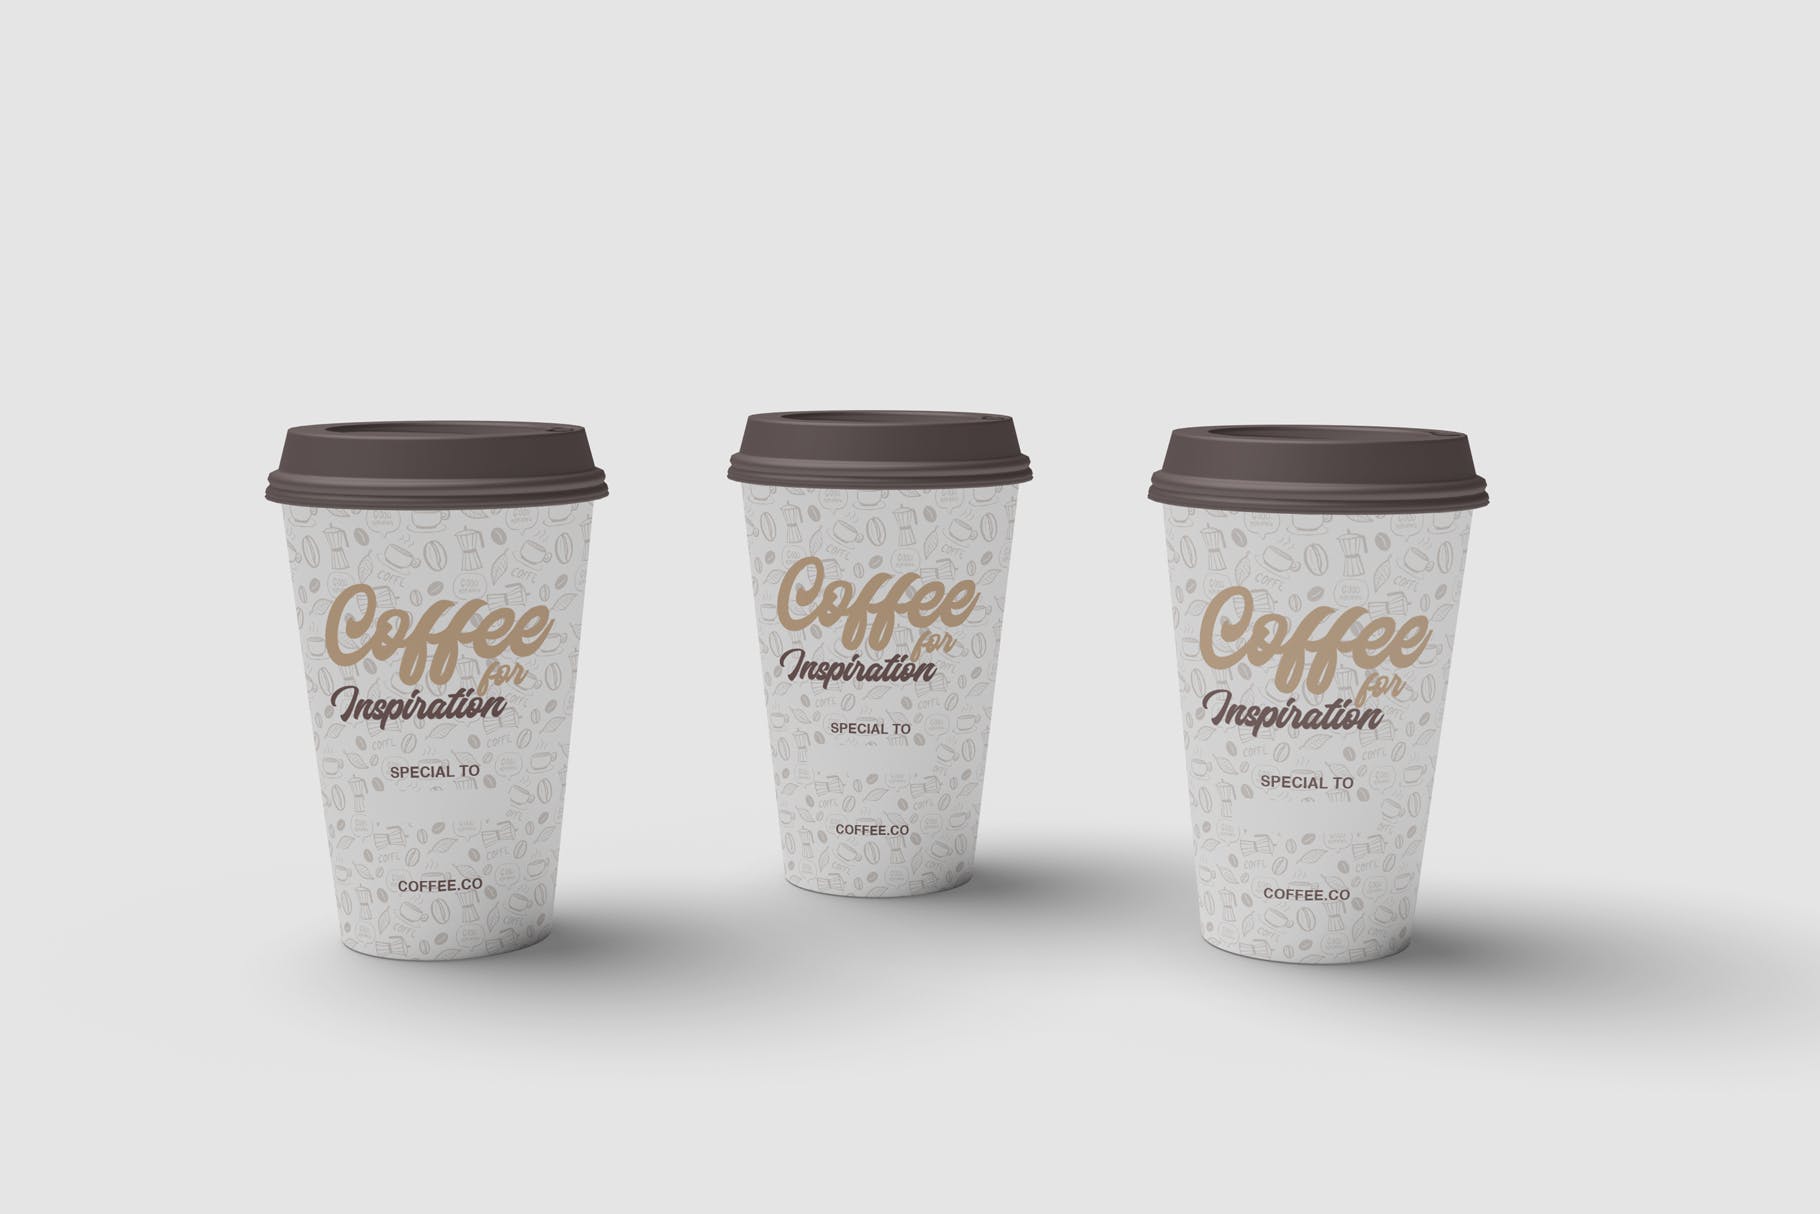 咖啡纸杯外观图案设计预览第一素材精选 Cup of Coffee Mockup插图(2)